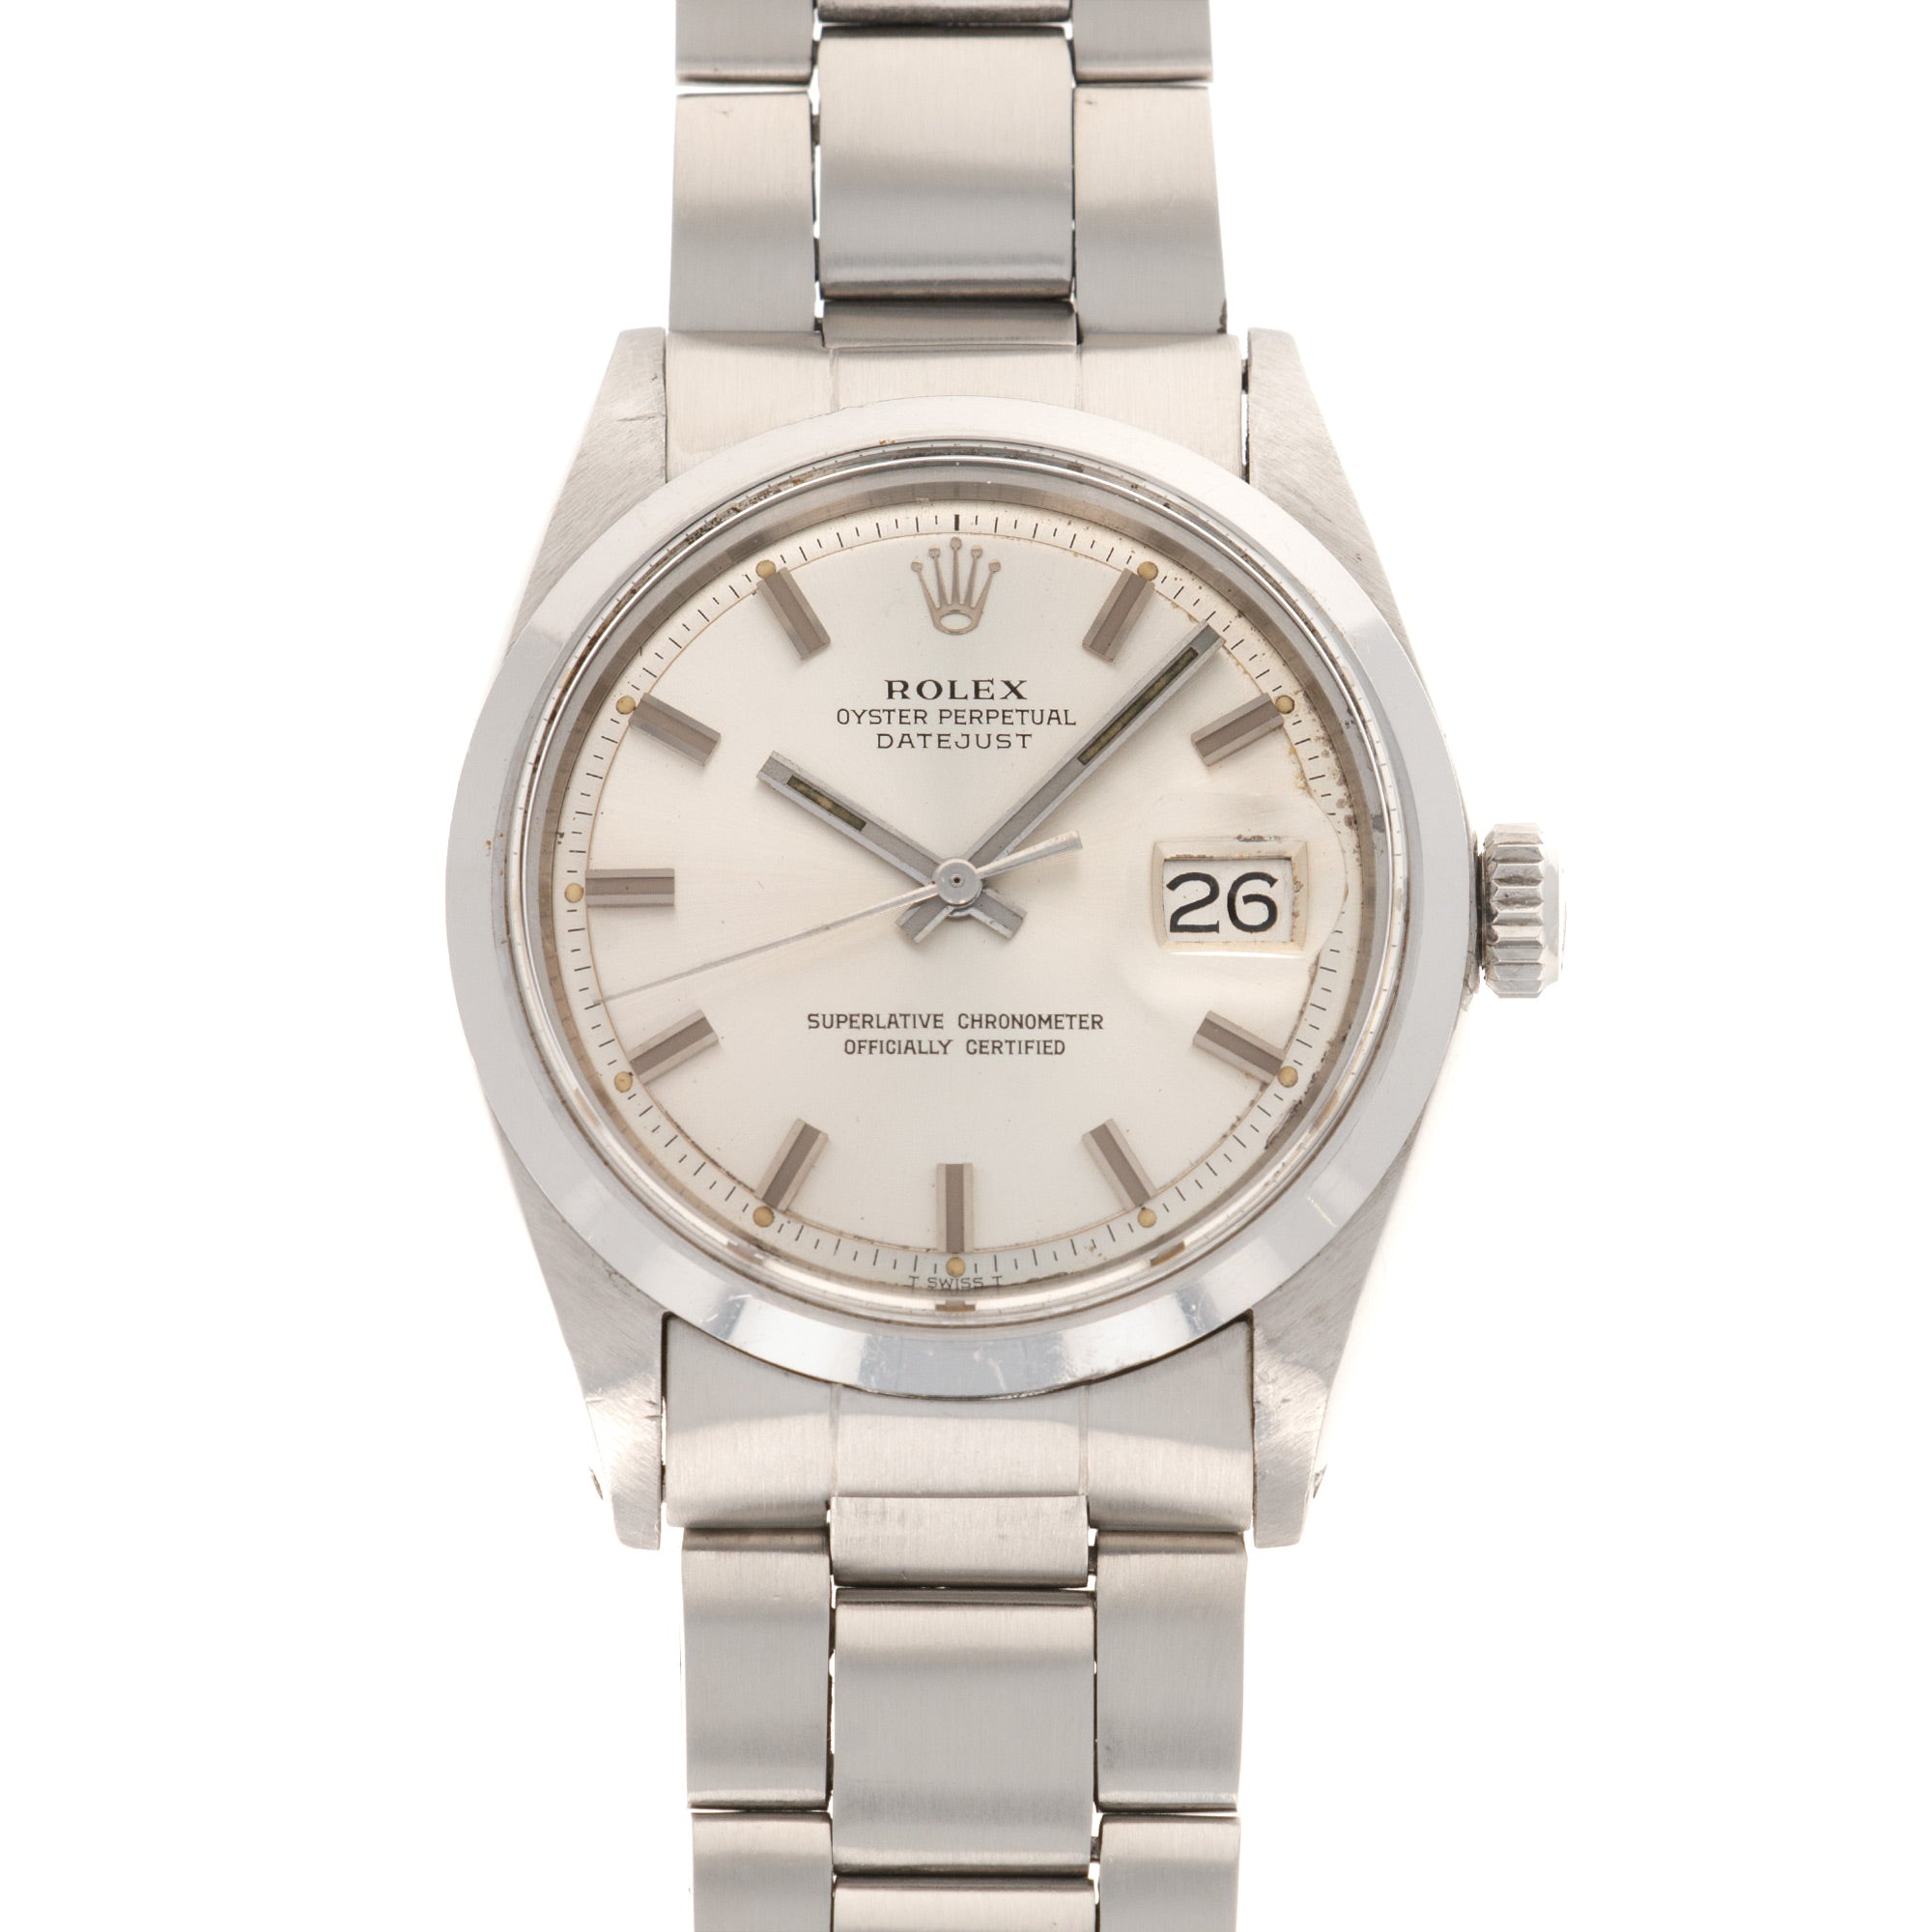 Rolex Steel Datejust Watch Ref. 1600 from 1970